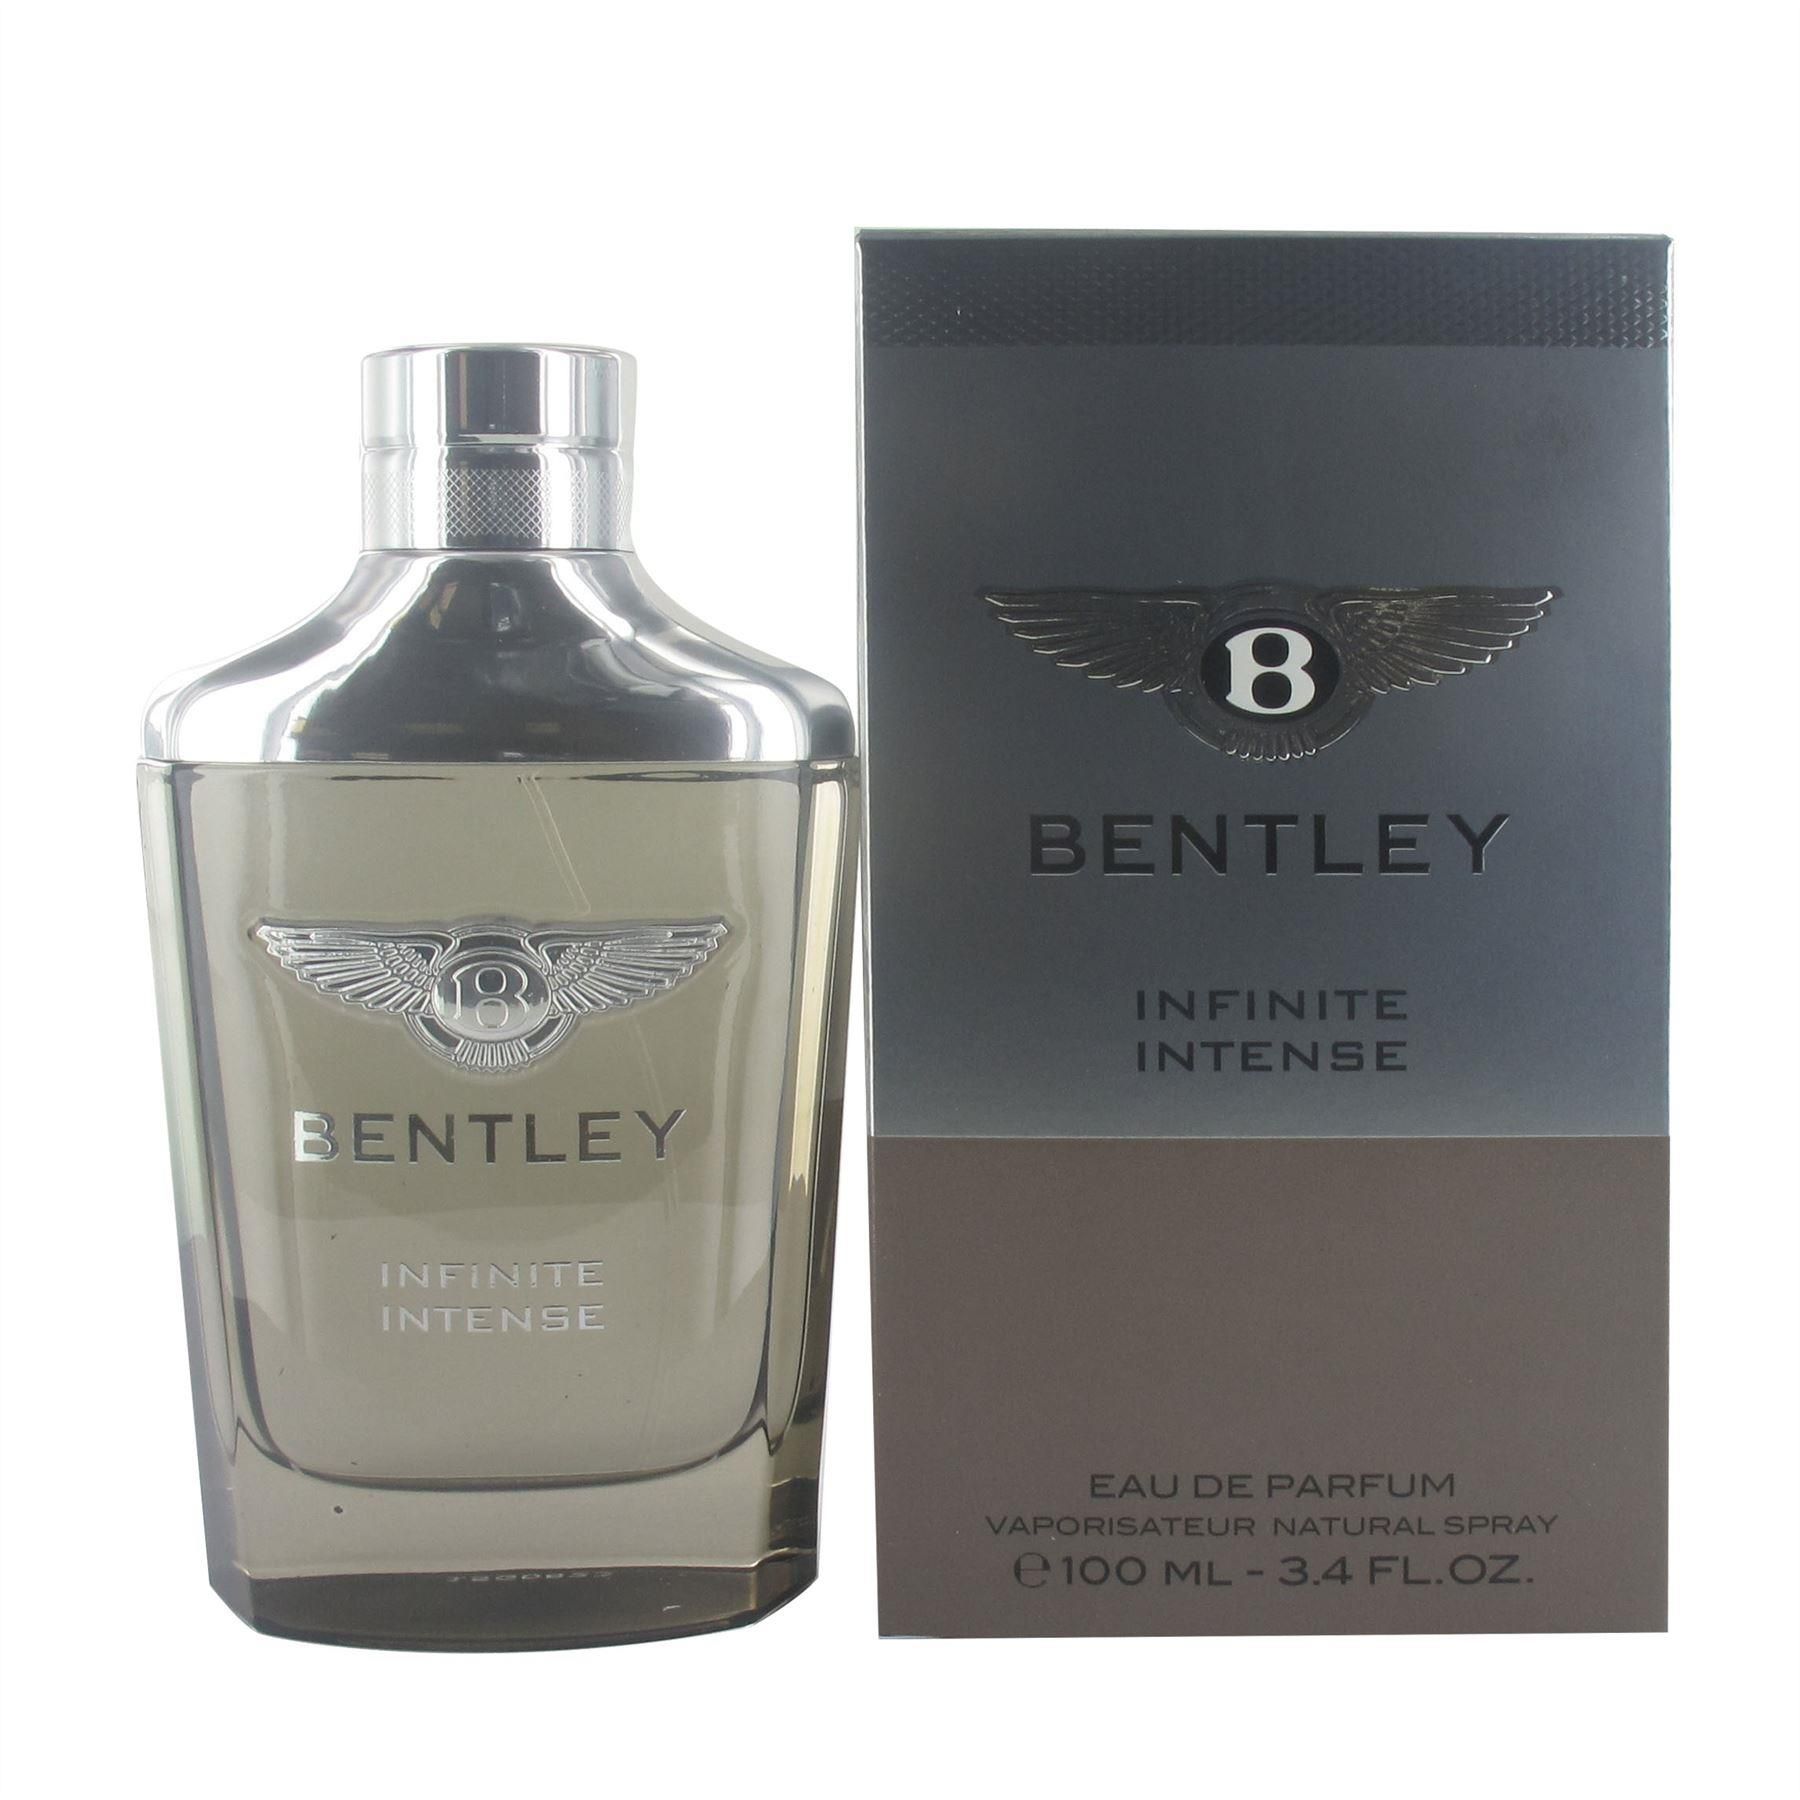 bentley infinite intense price